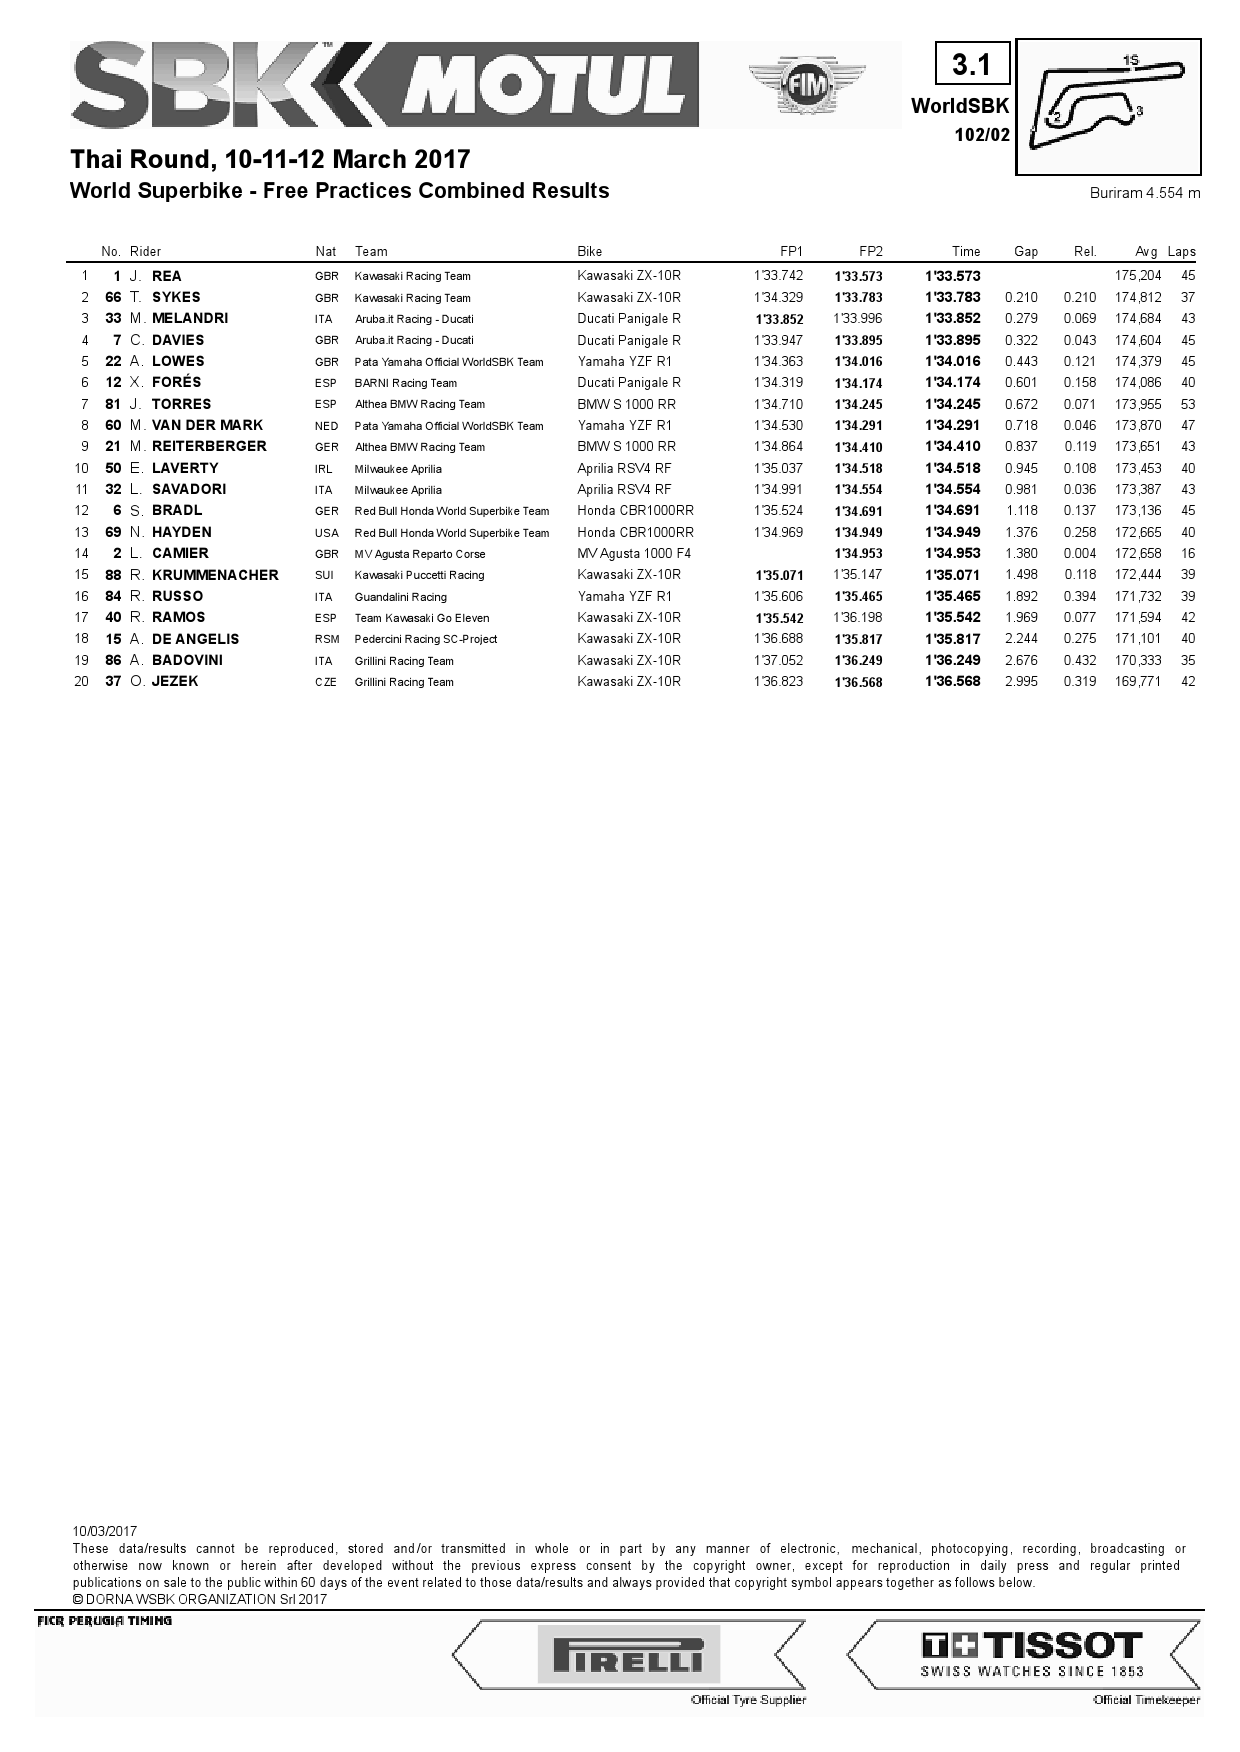 Результаты предварительной квалификации 2-го этапа WSBK, Chang International Circuit